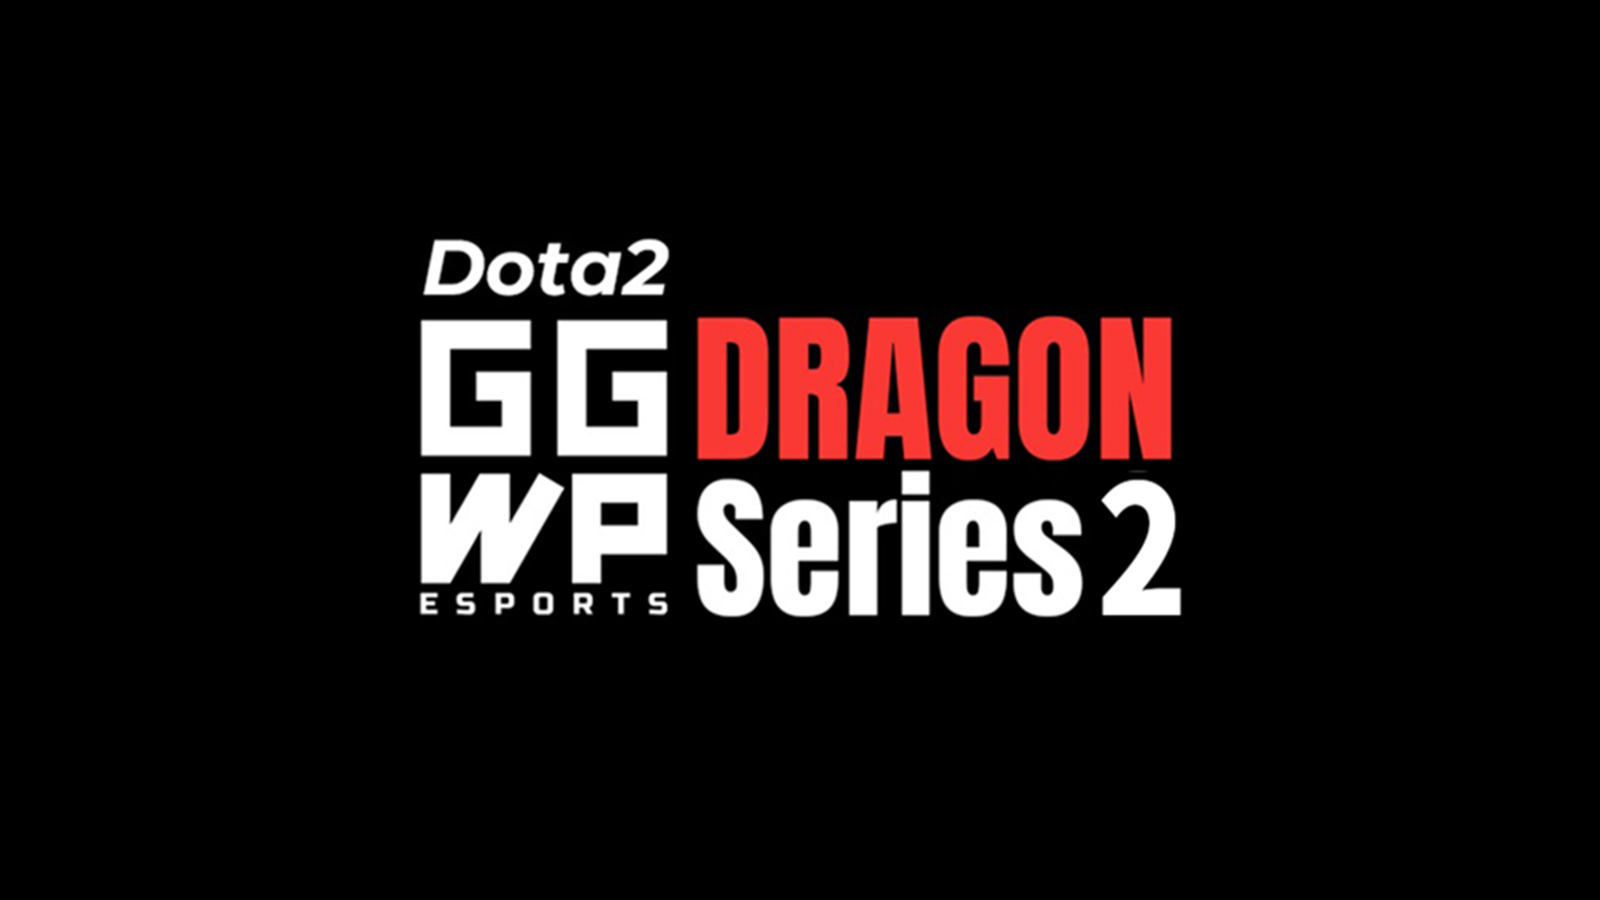 Dota 2: GGWP Dragon Series 2